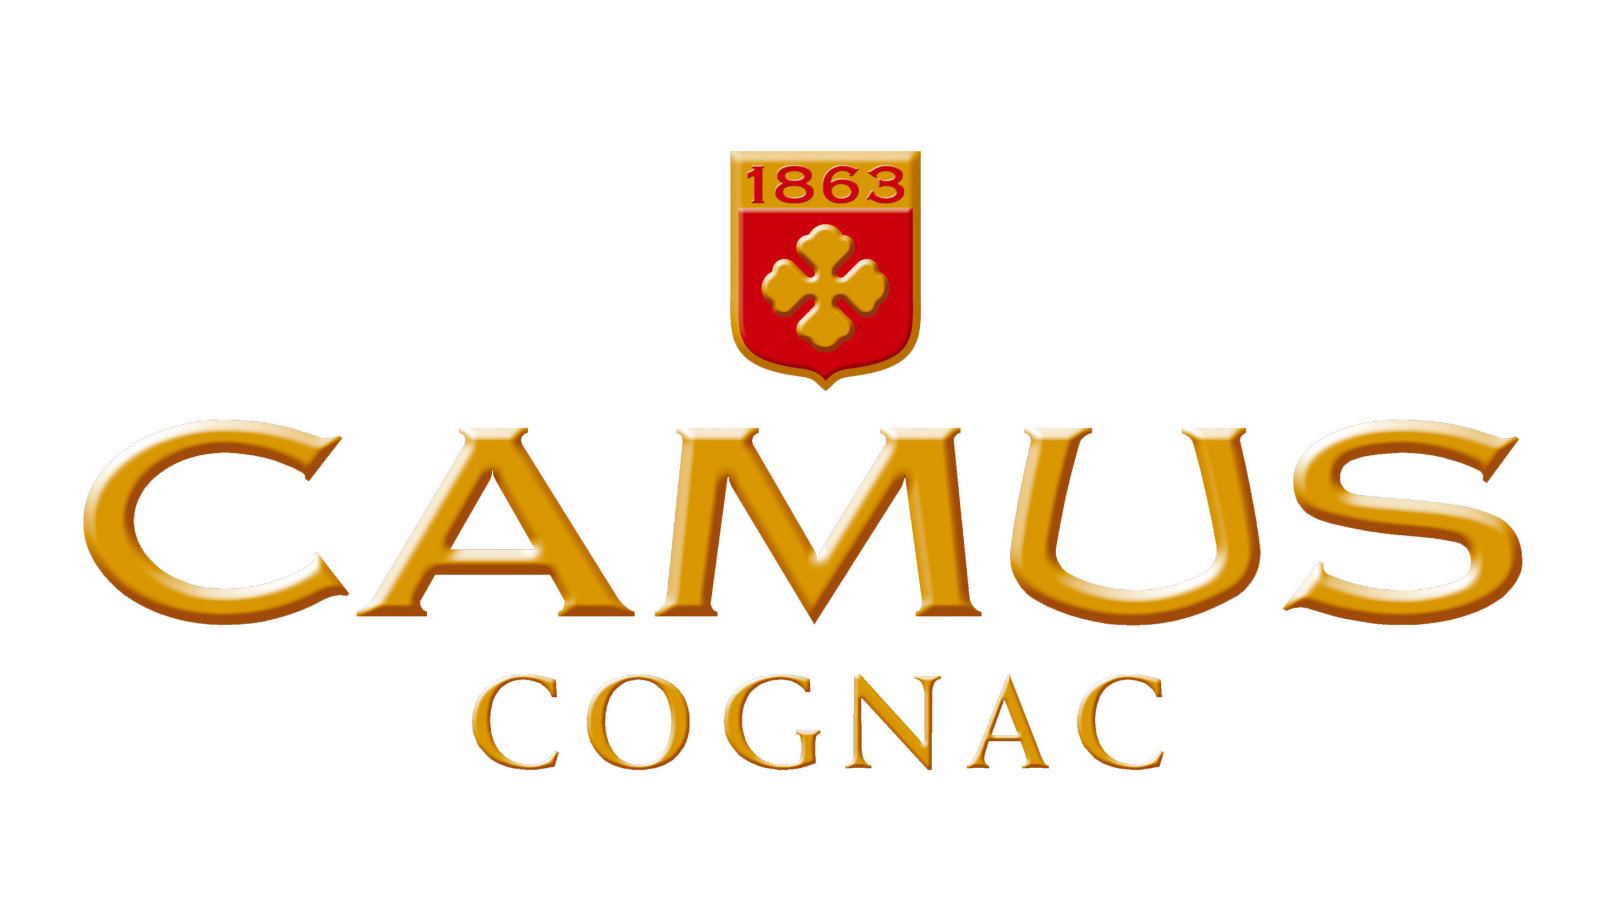 Logo CAMUS